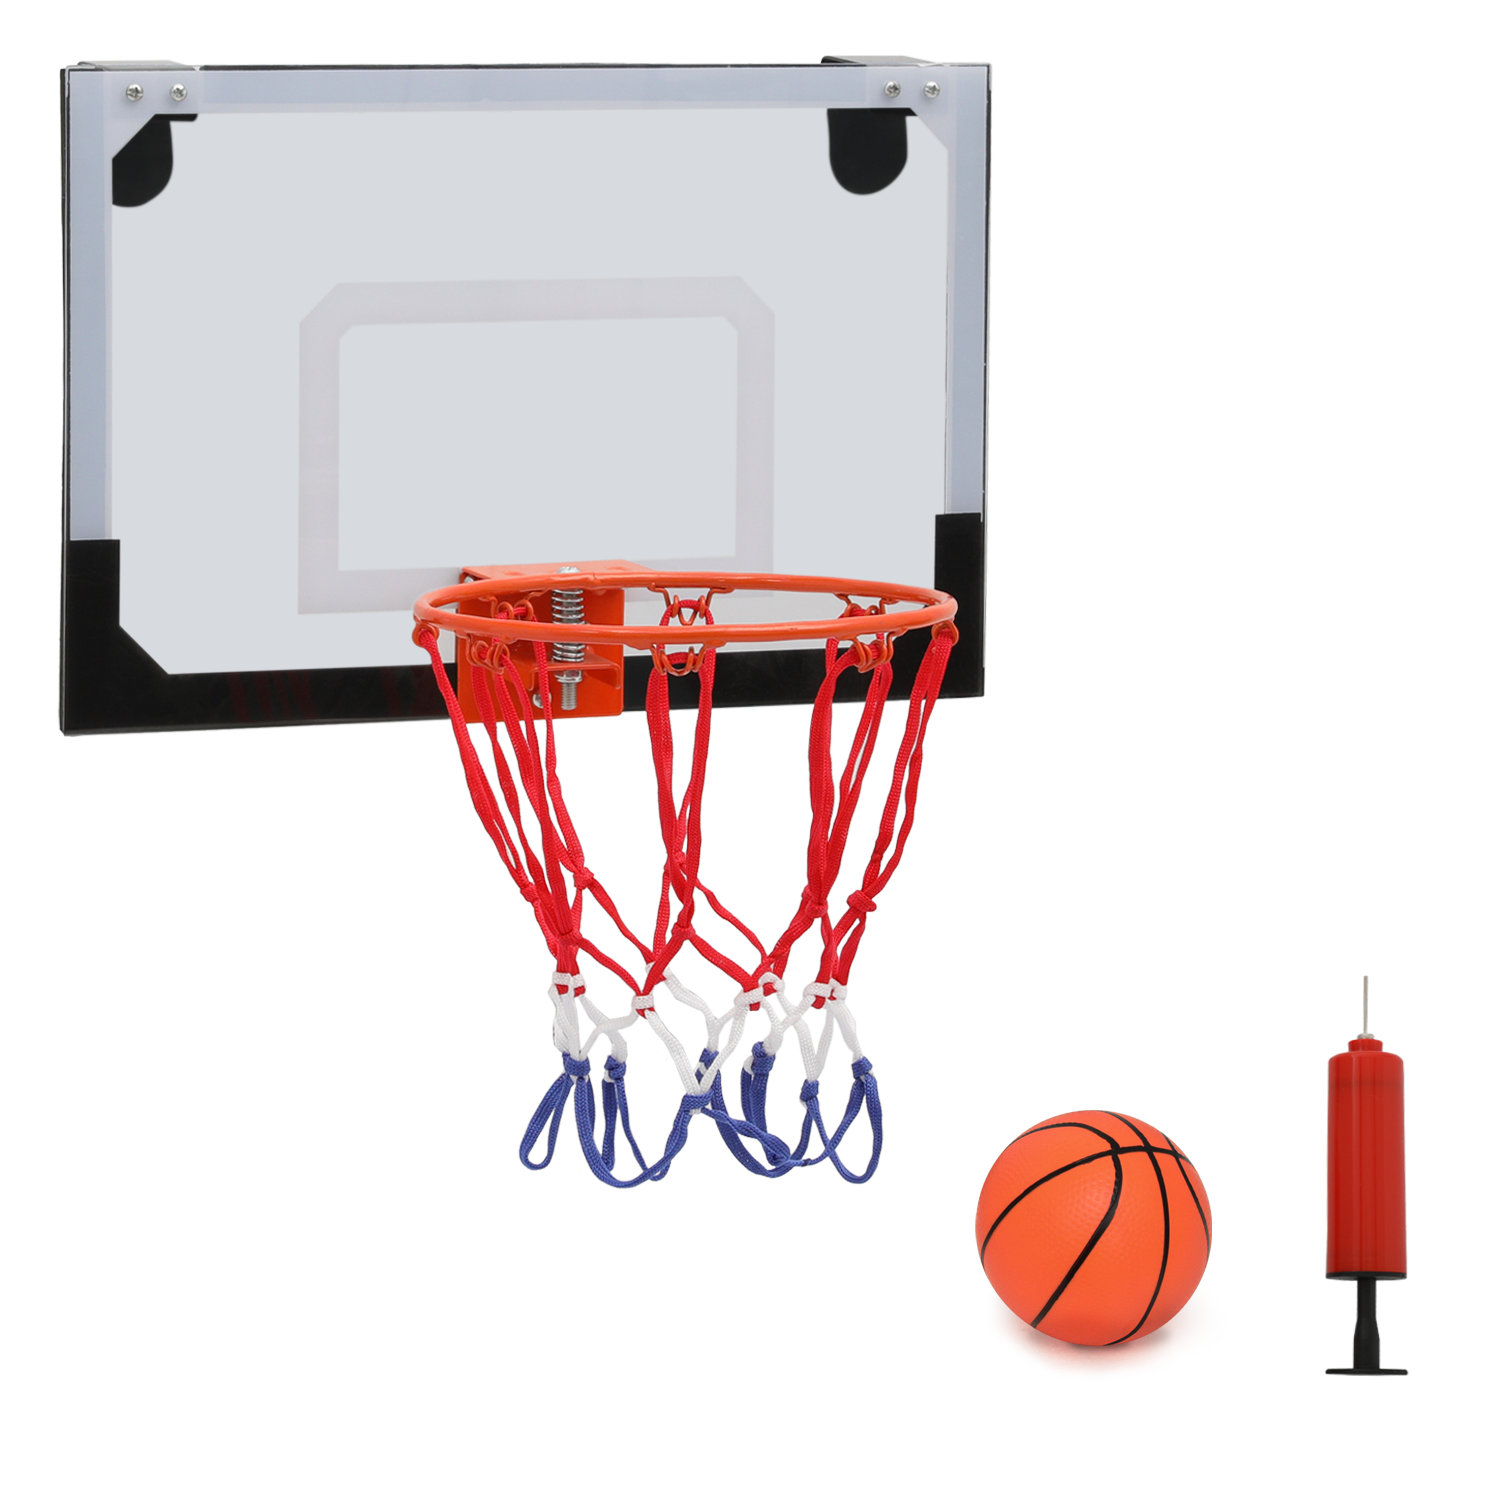 Mini Basketball Hoop, Indoor Over the Door Mini Hoop and Basketball Set,  Basketball Mini Hoop